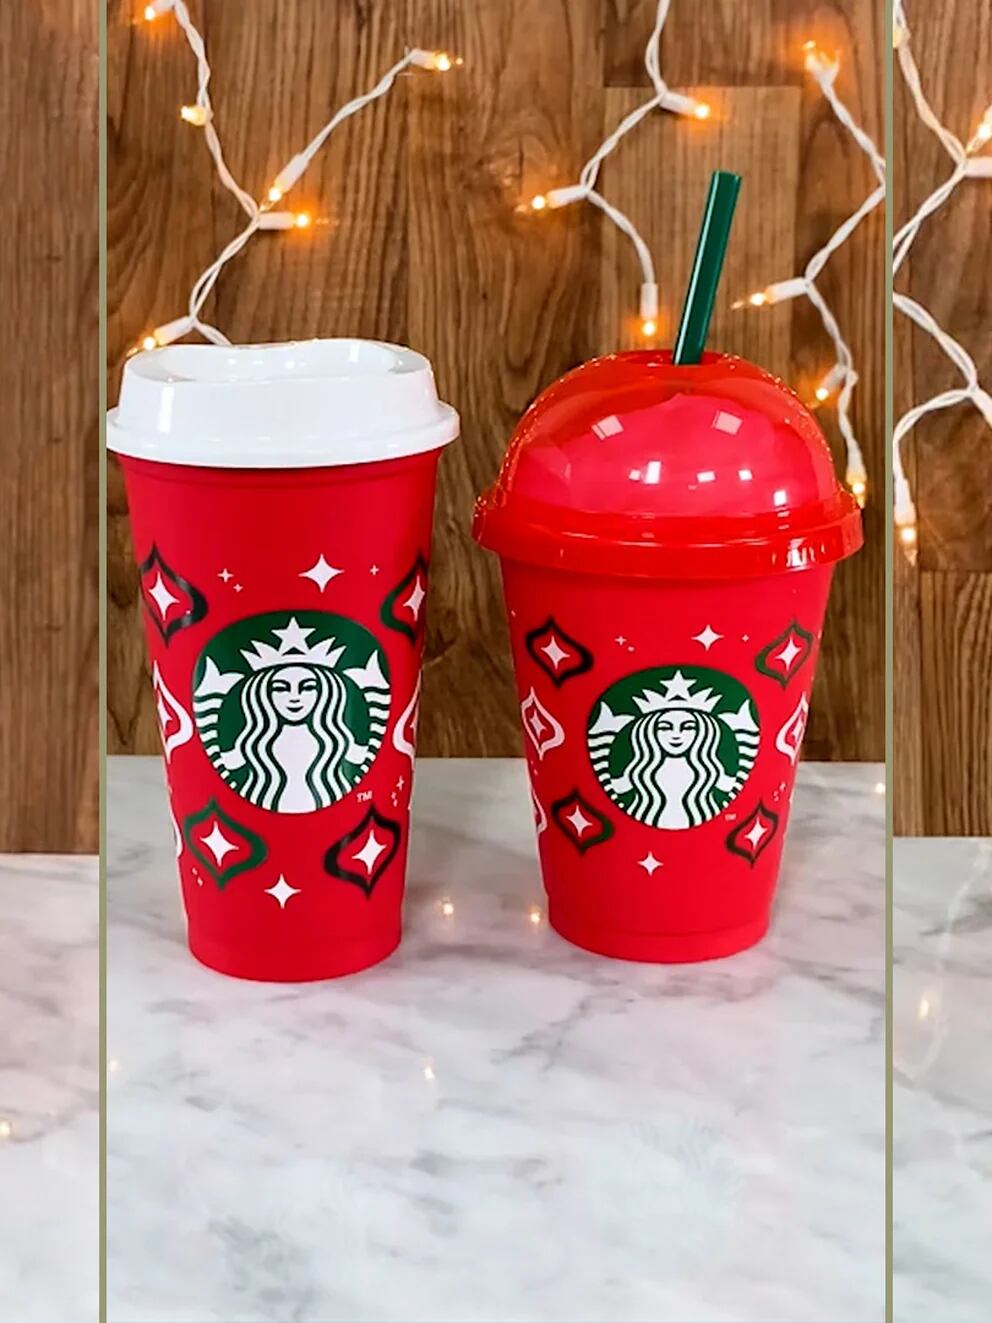 Starbucks regalará estos vasos rojos navideños reusables el 10 de